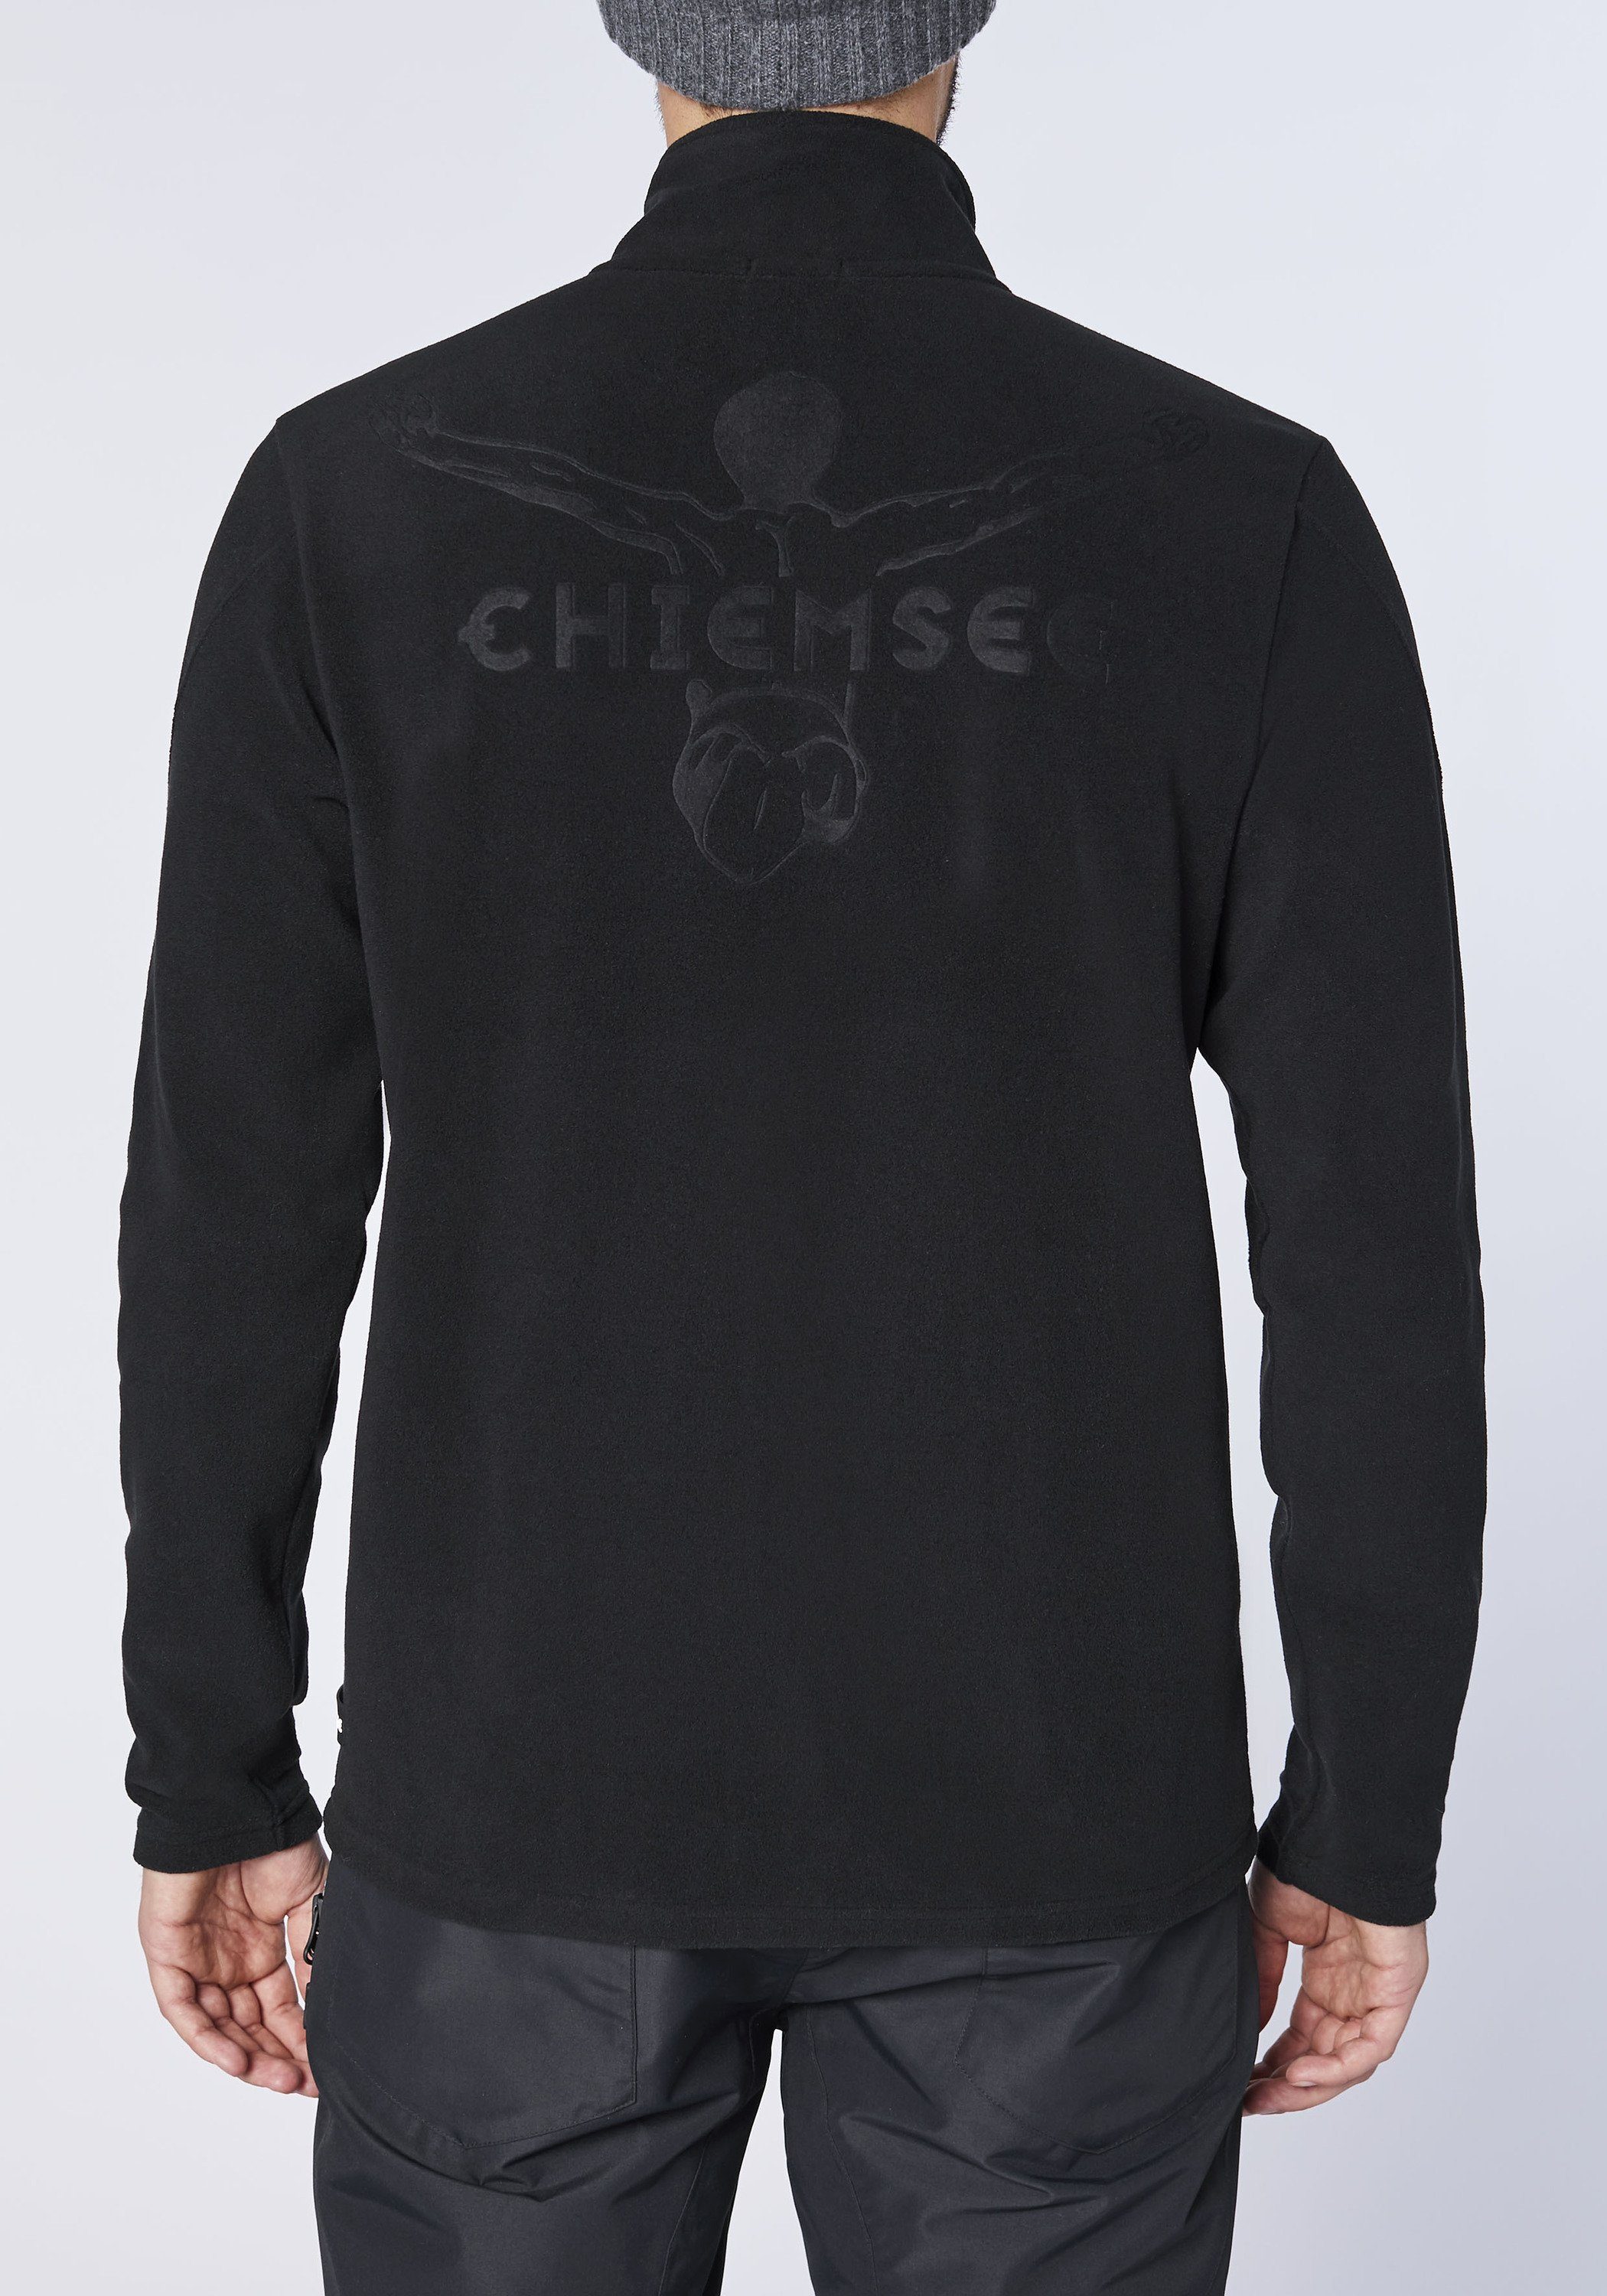 Jumper-Motiv im Basic-Stil 1 schwarz Chiemsee Fleecejacke mit Fleece-Jacke